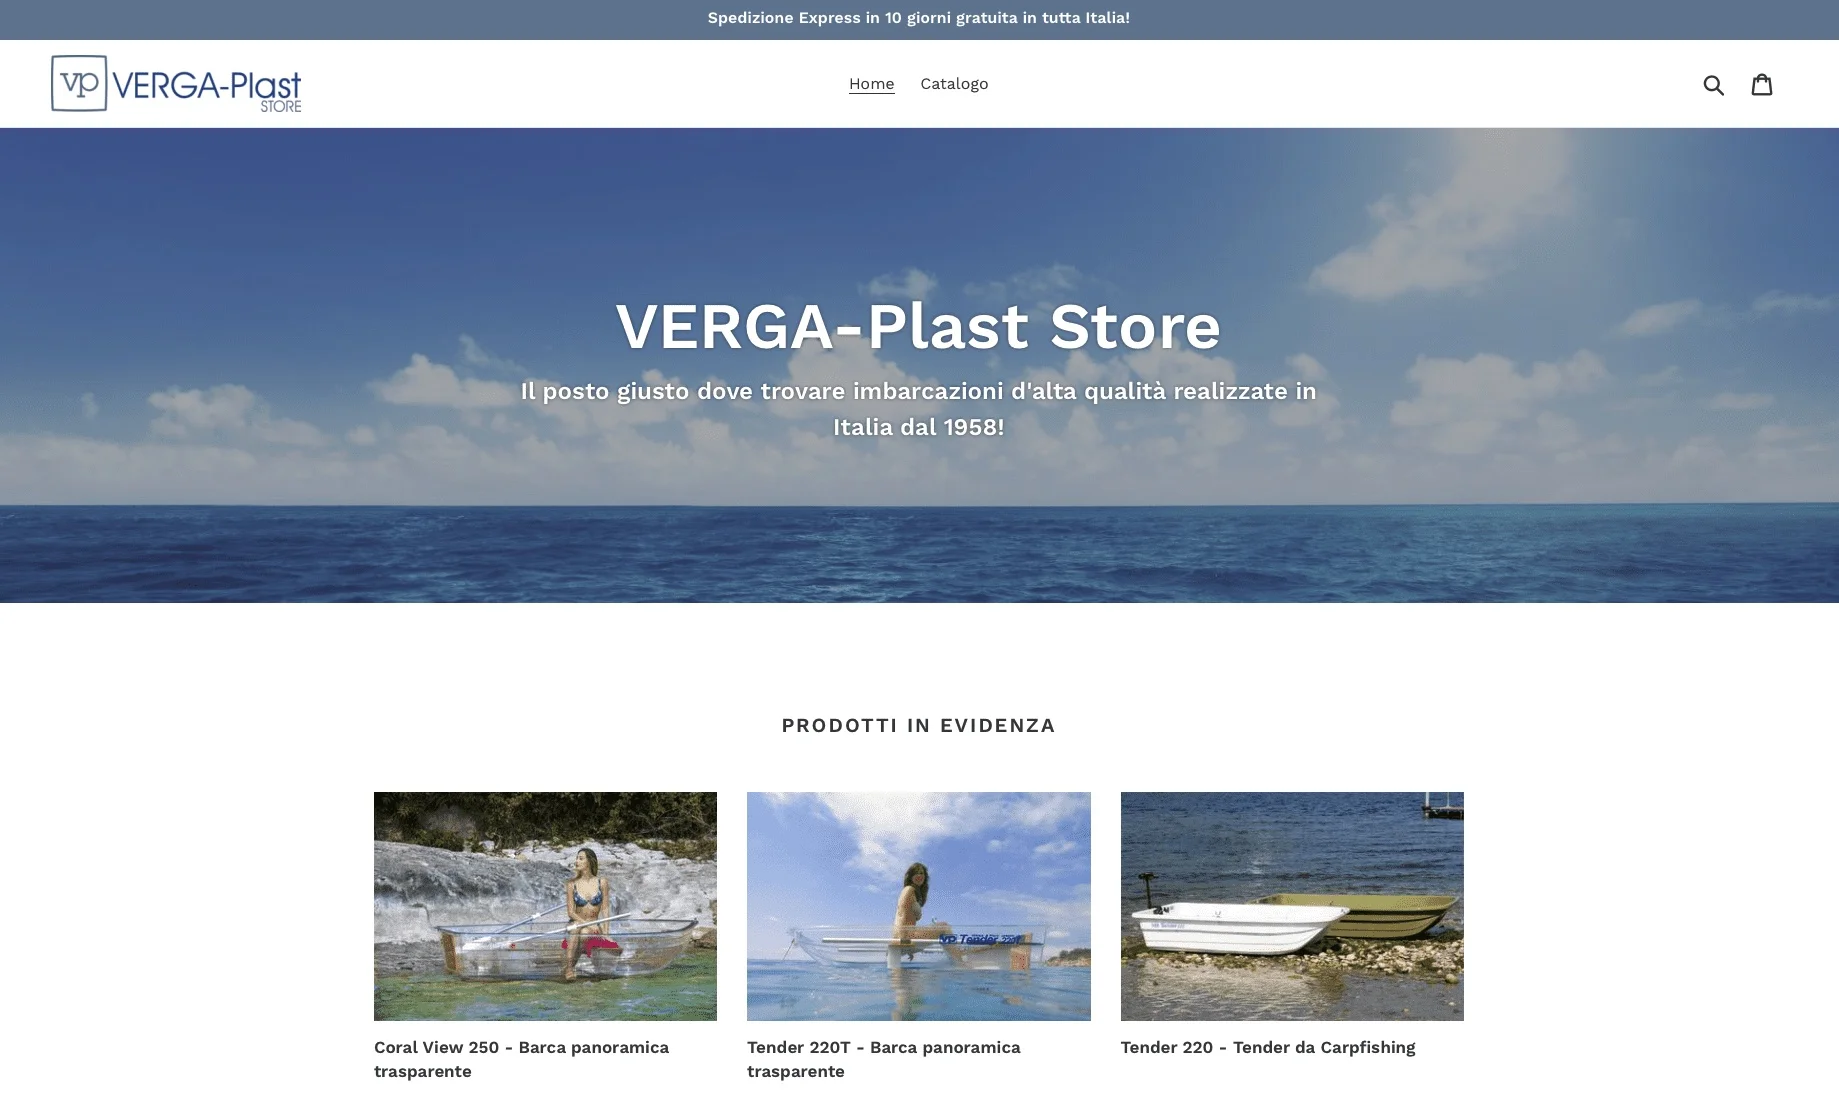 Cette capture d'écran montre la première page d'accueil du magasin VERGA-Plast.